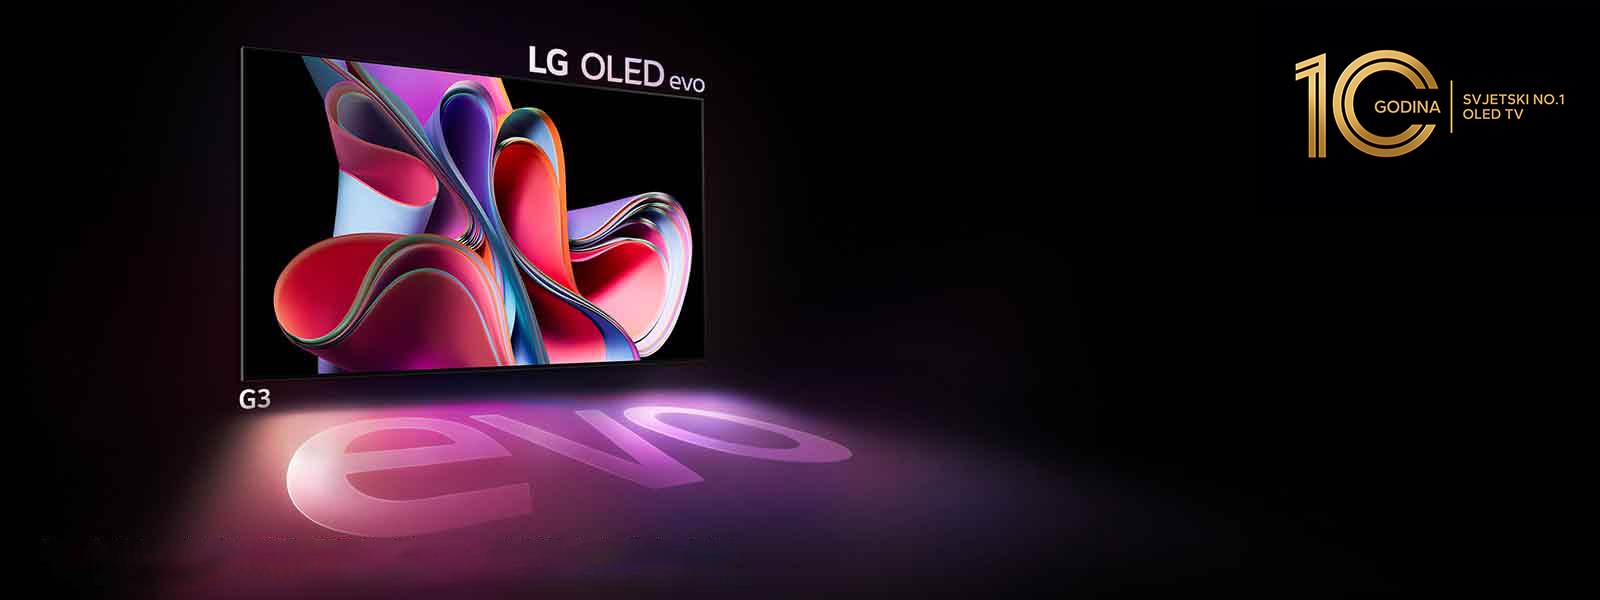 LG OLED G3 sveti v temi.  V zgornjem desnem delu je logotip za 10. obletnico OLED TV.